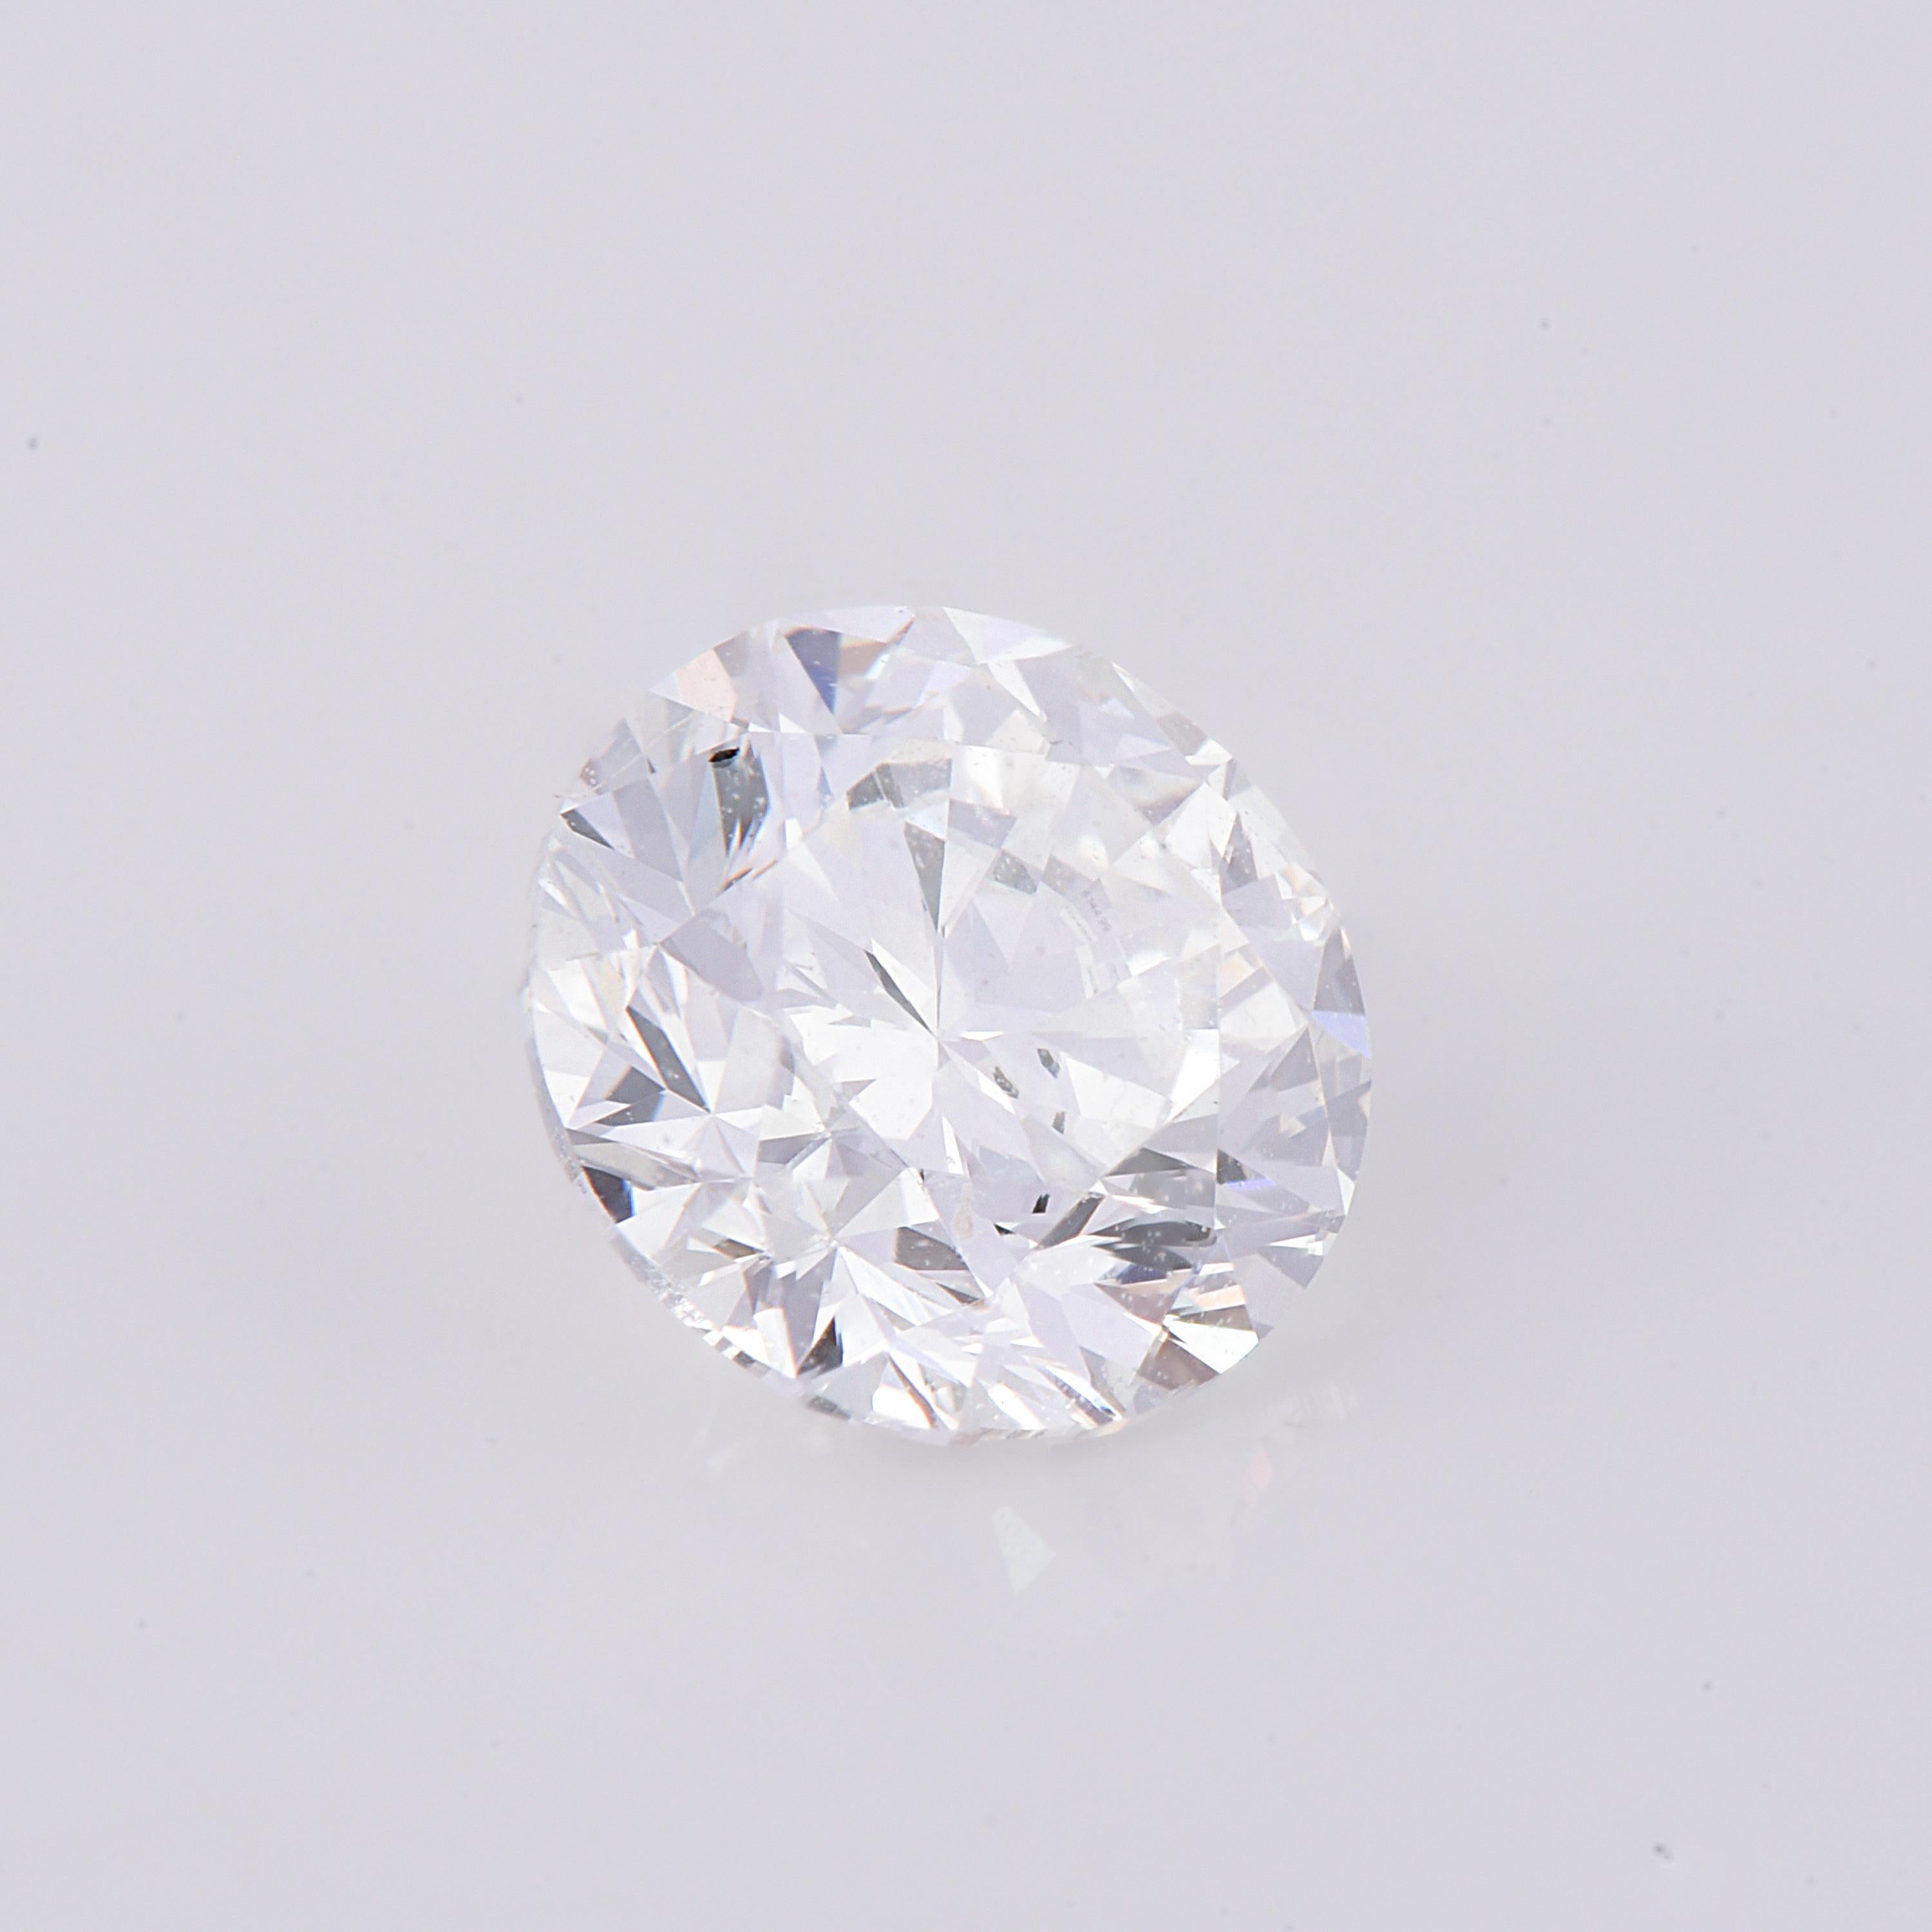 1.00 carat diamant incolore - certifié de couleur F et de pureté VS1 par le GIA, ce diamant présente une brillance idéale, un excellent polissage et une très bonne symétrie. Mesurant 6,19-6,26 x 3,98 mm, ce diamant peut être serti dans une bague de